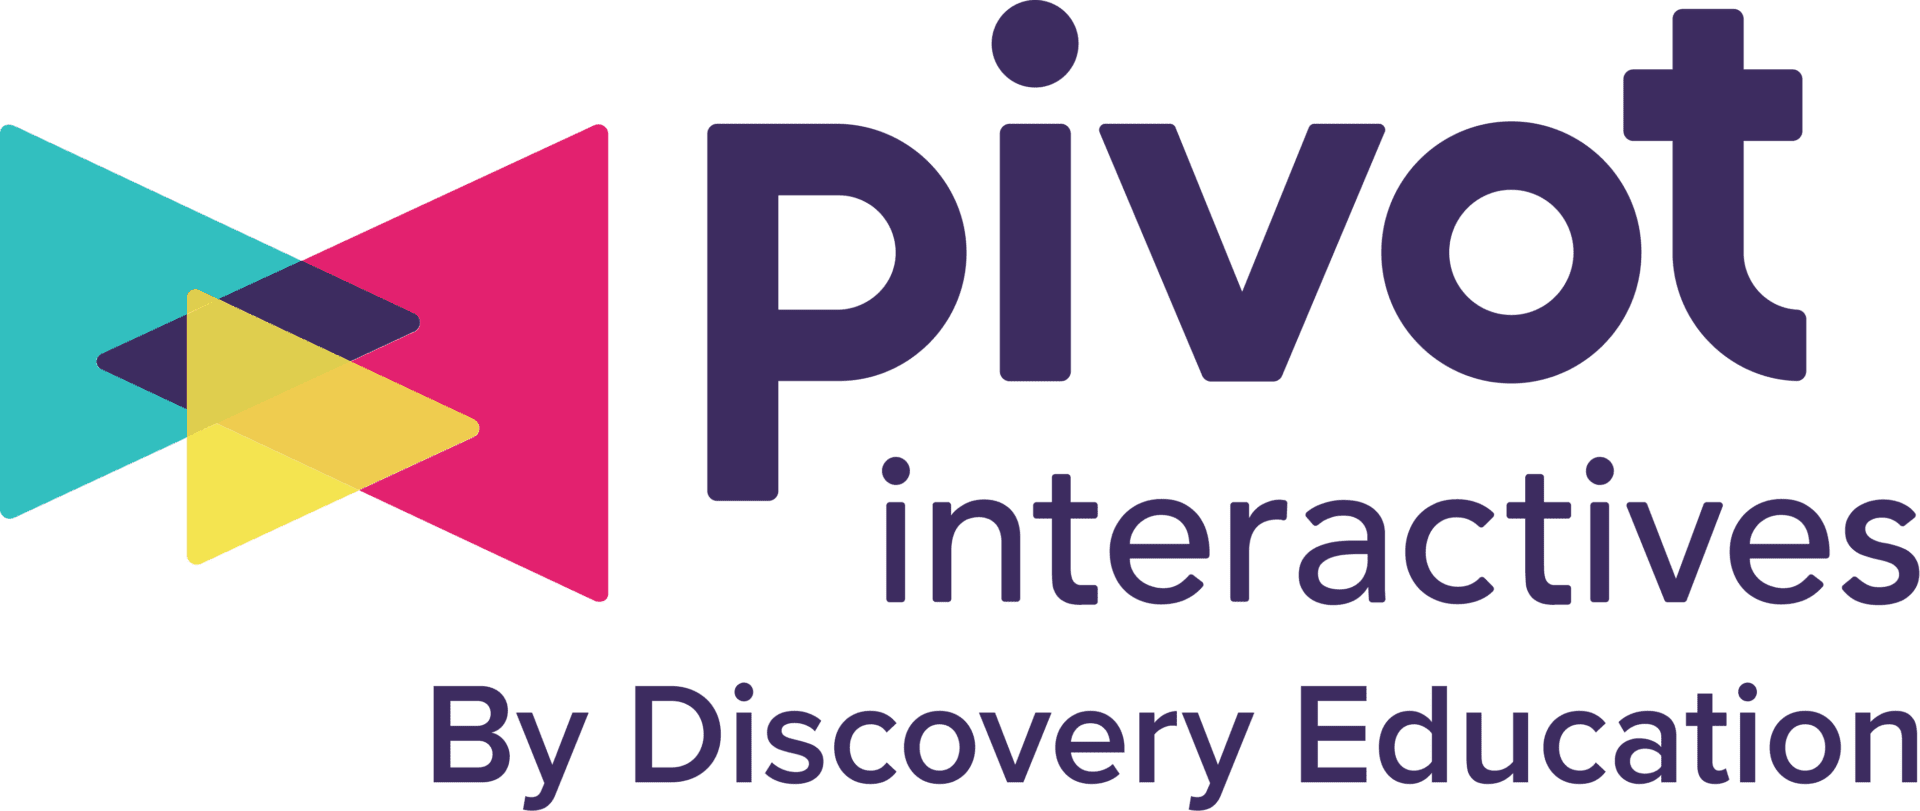 Pivot Interactives Logo Pos